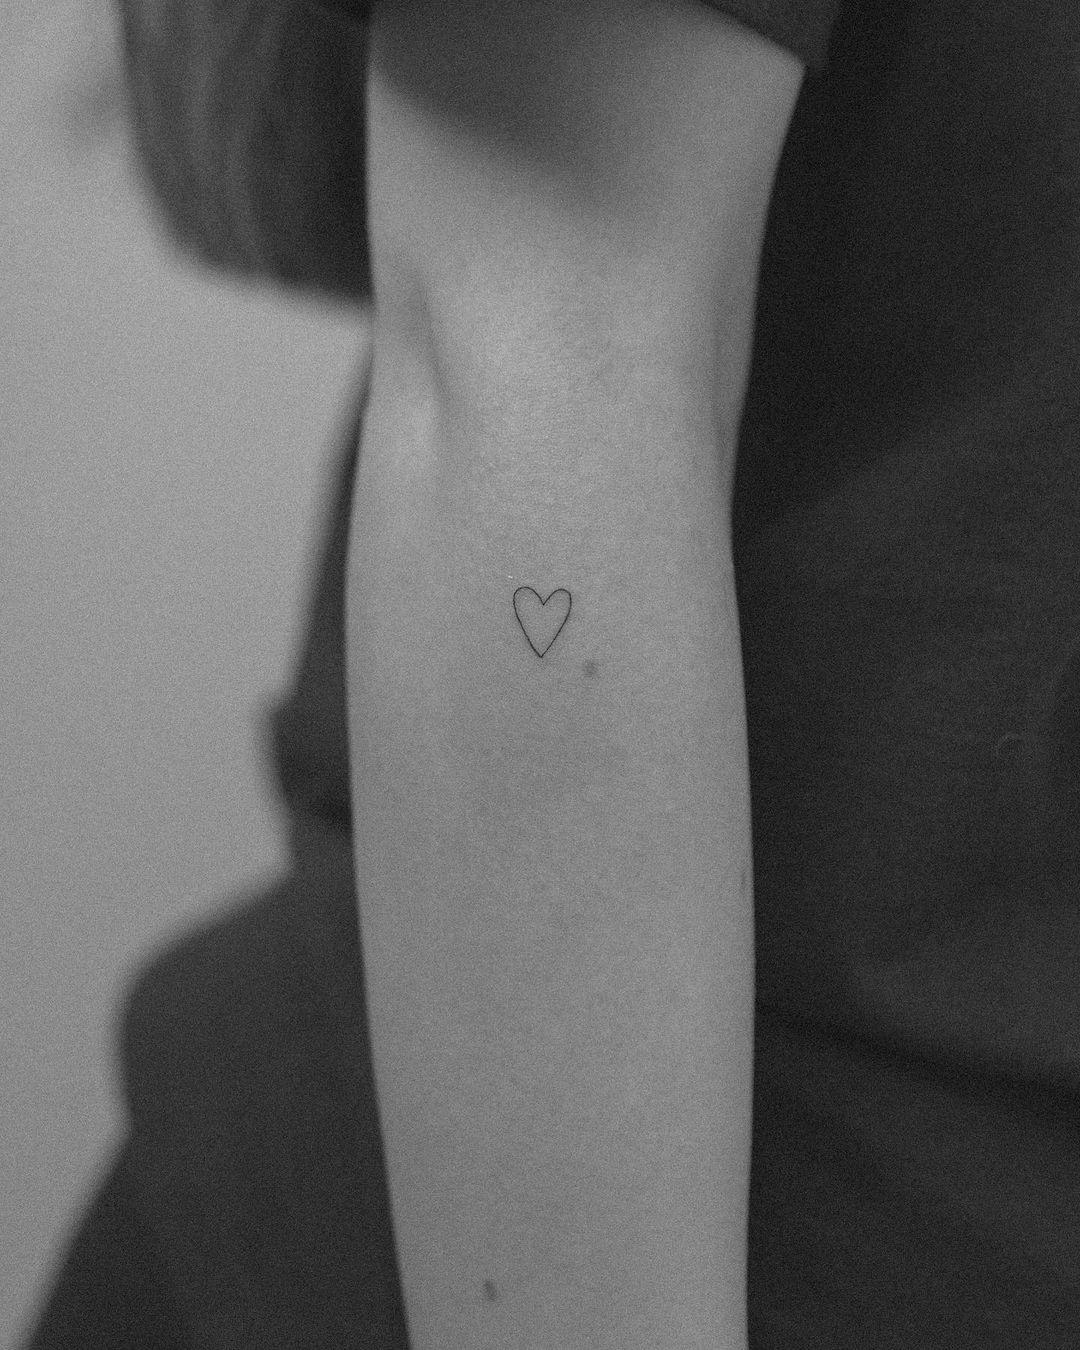 Tattoo discreto de un corazón